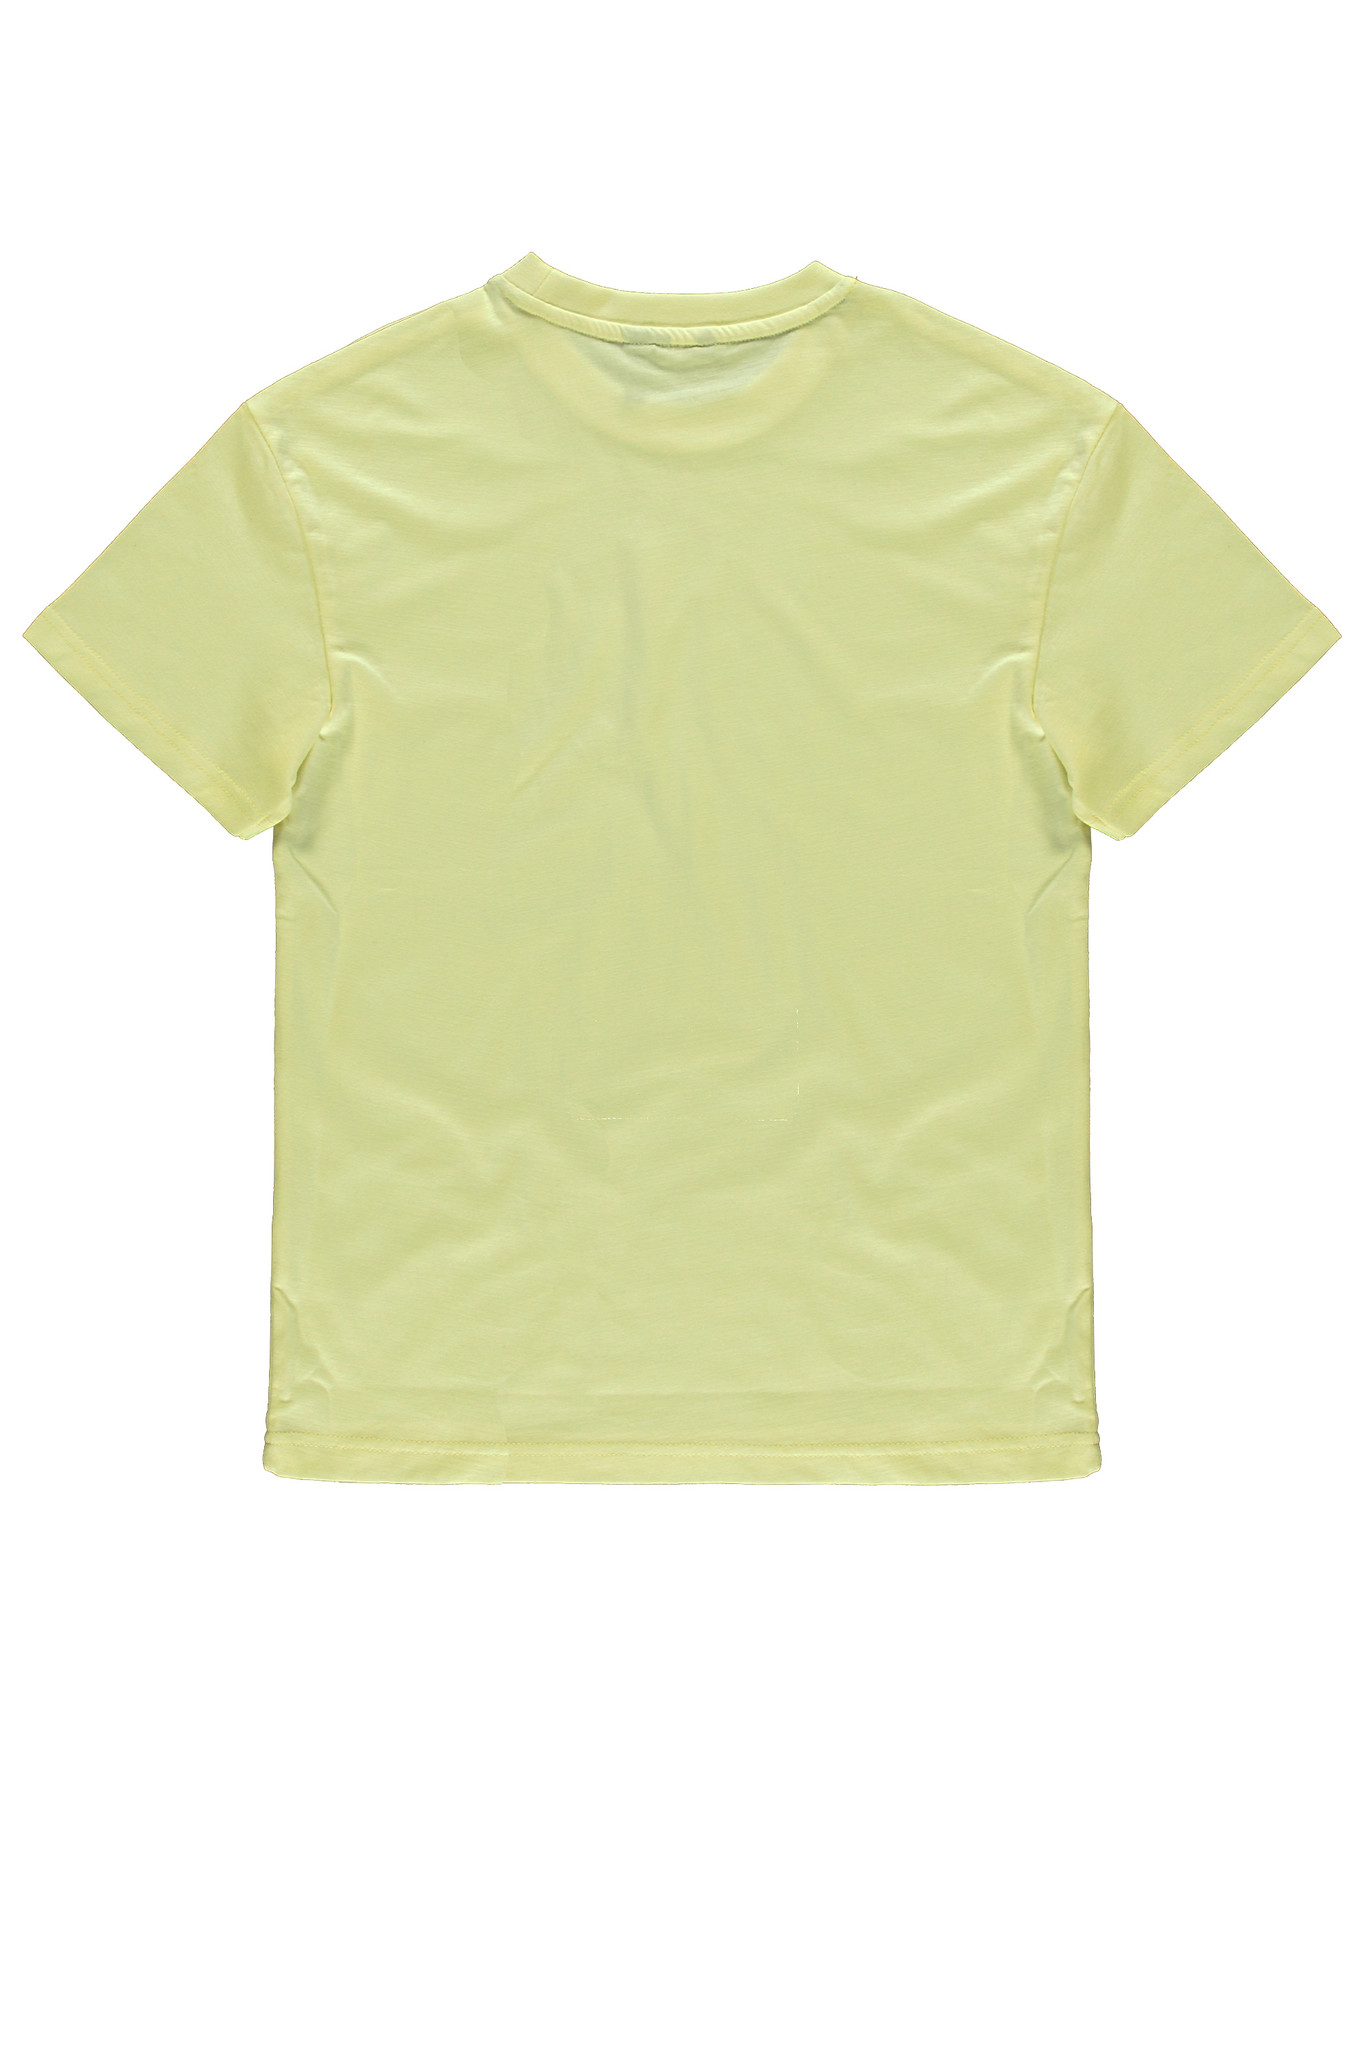 Bellaire Jongens t-shirt - Lemon